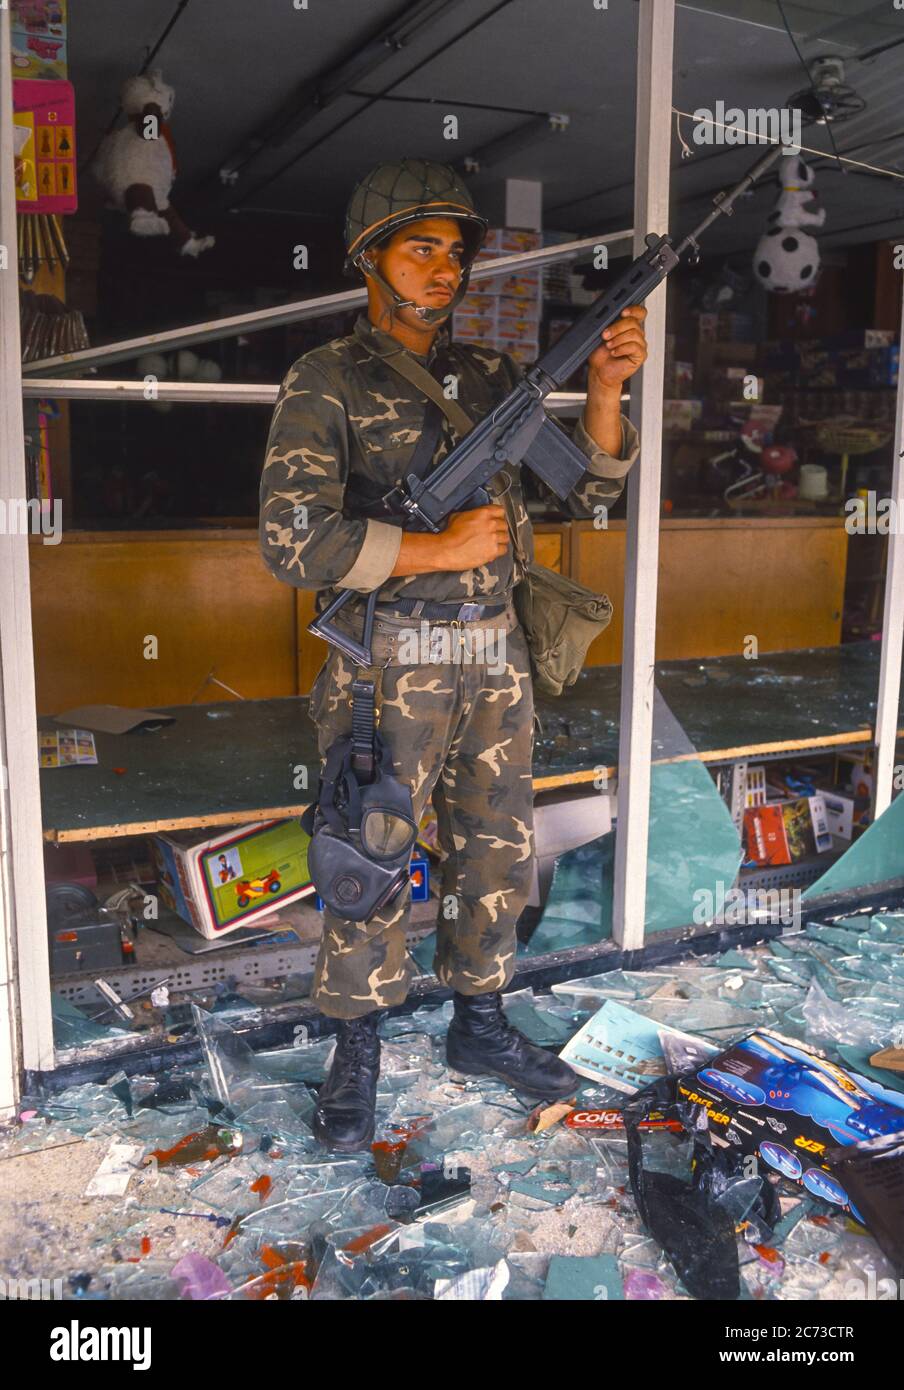 CARACAS, VENEZUELA, MARCH1989 - un soldat de l'armée vénézuélienne qui garde le magasin pillé pendant l'état d'urgence à Caracas, connu sous le nom de Caracazo. Banque D'Images